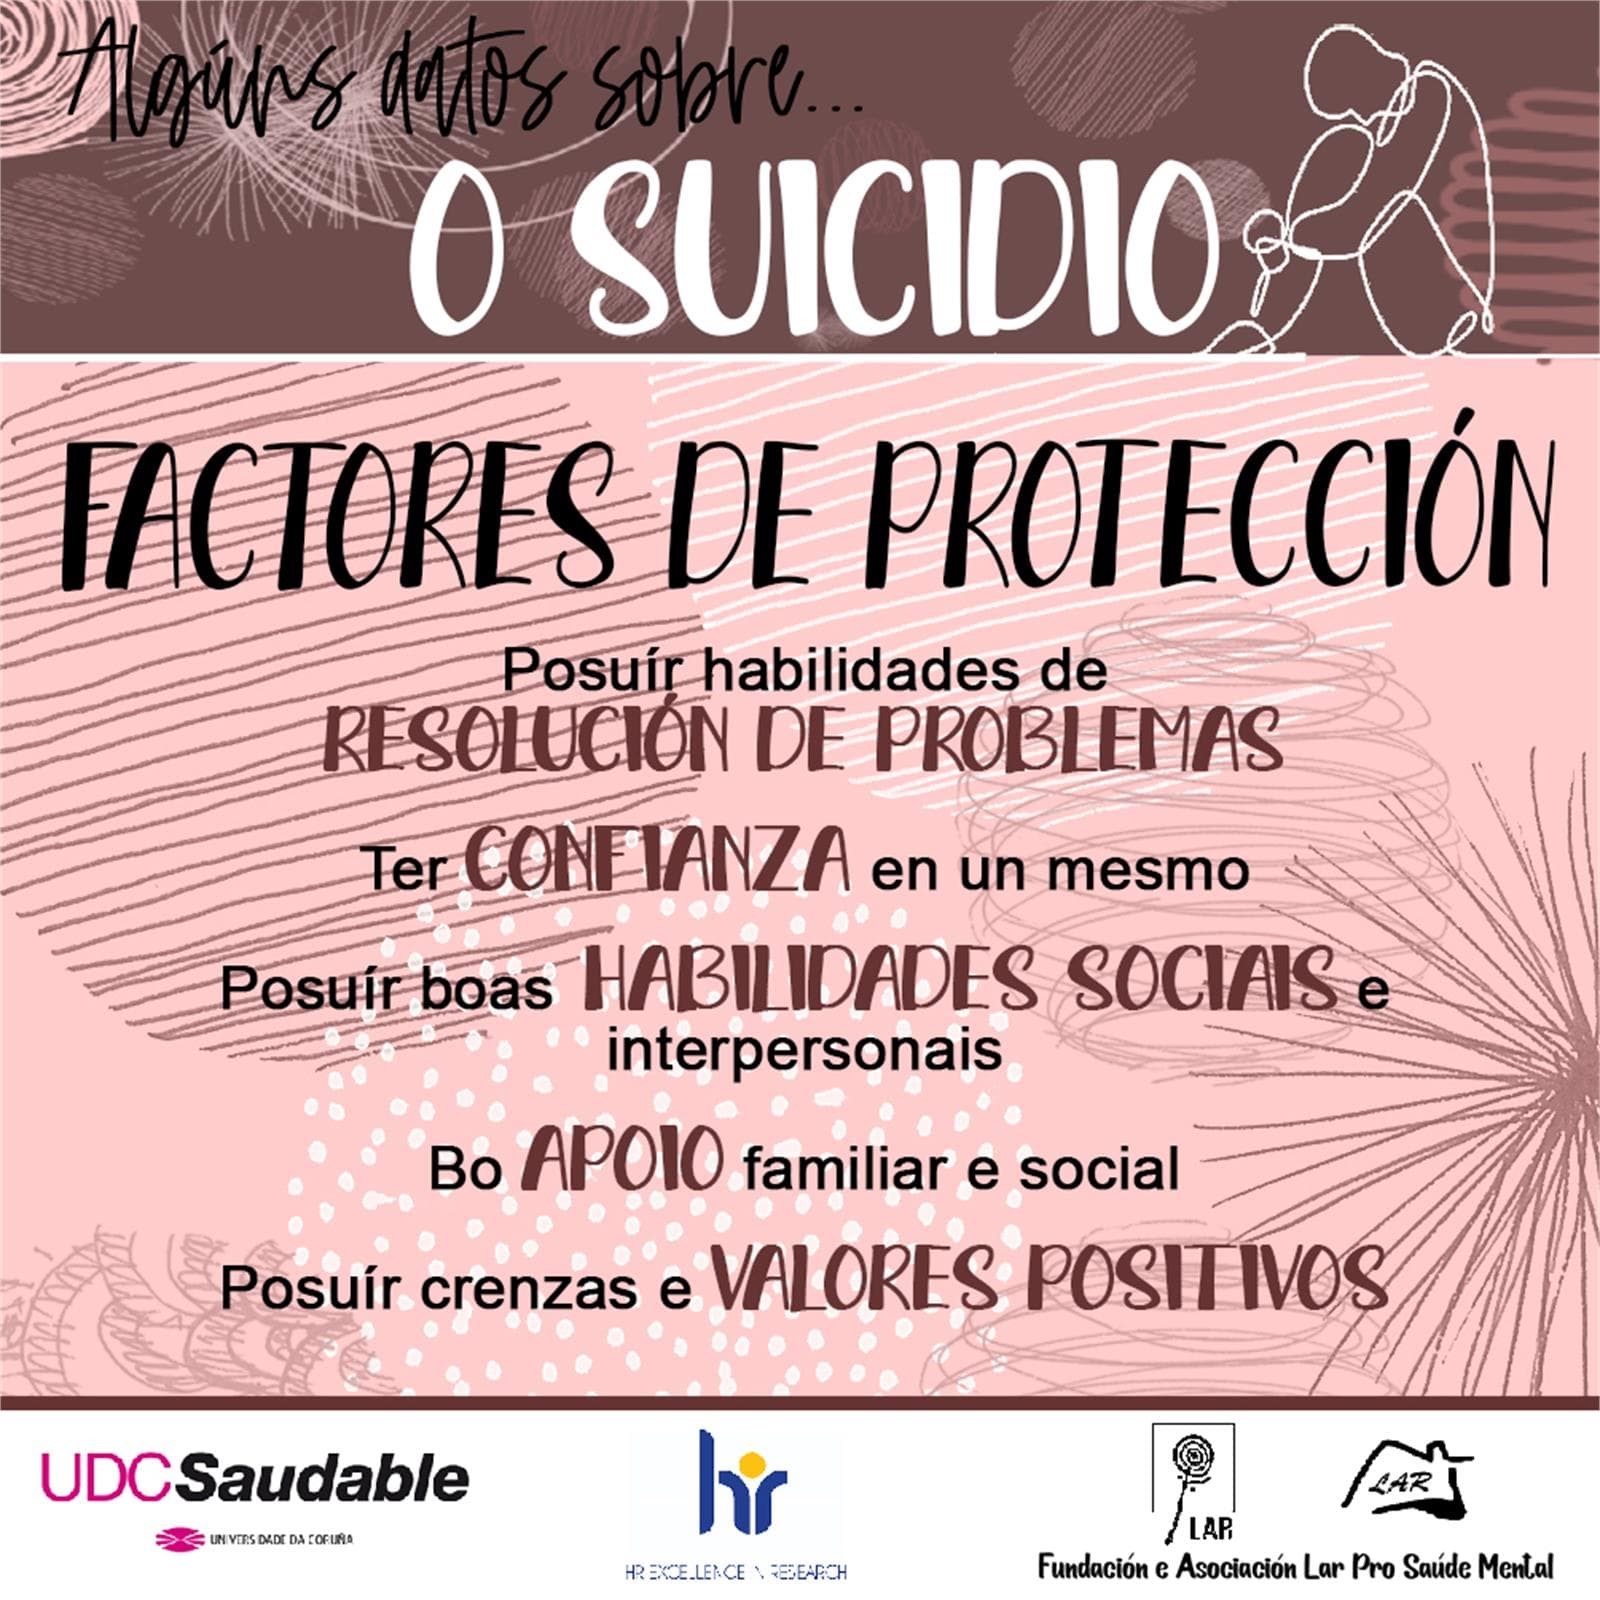 Algunos Datos sobre Suicidio... - LAR Pro Salud Mental - Imagen 5